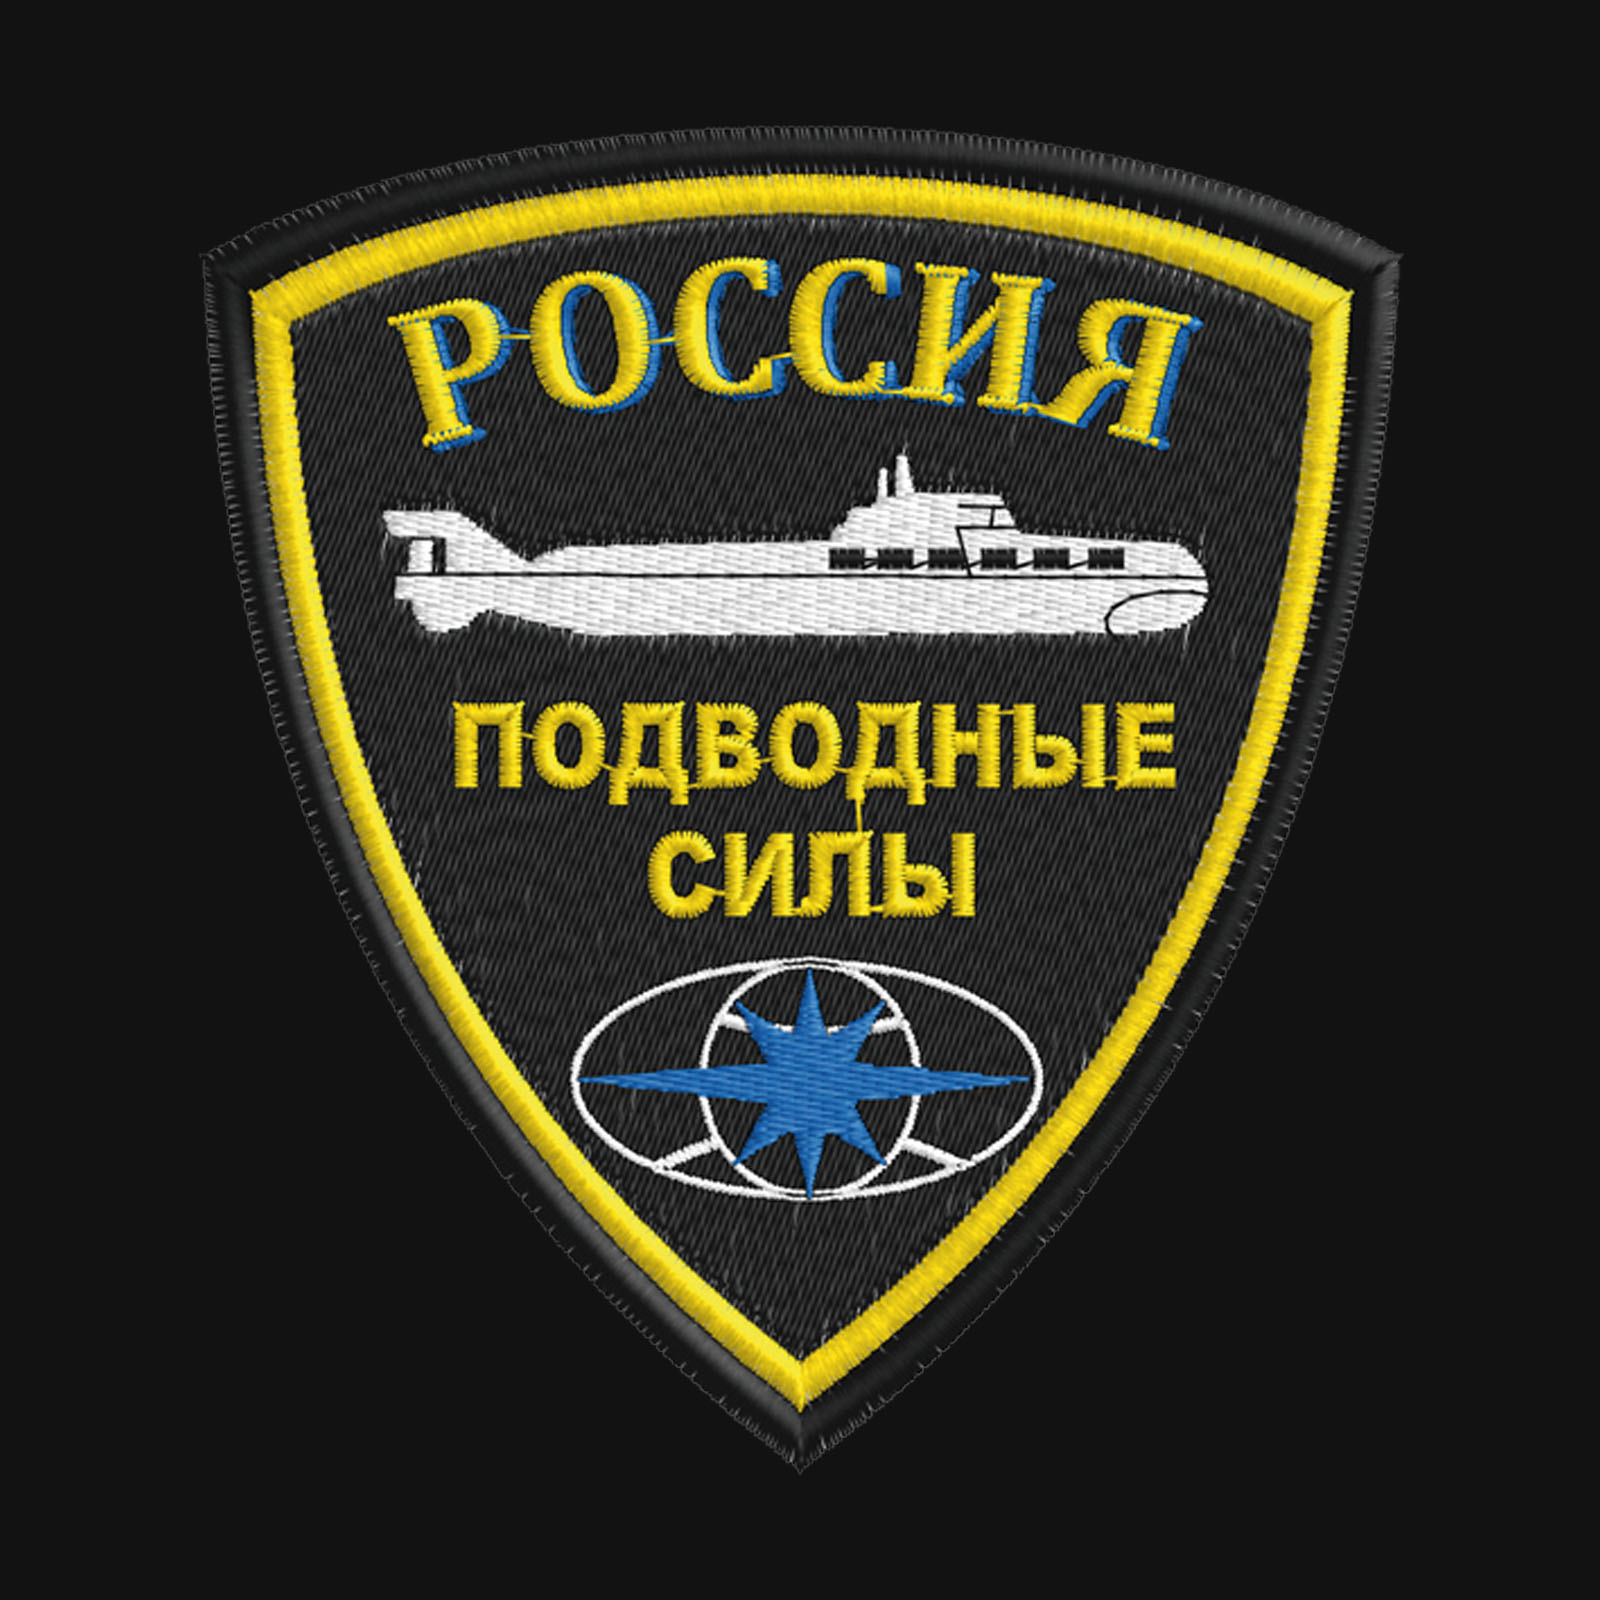 Толстовка с эмблемой Подводных сил России заказать с доставкой